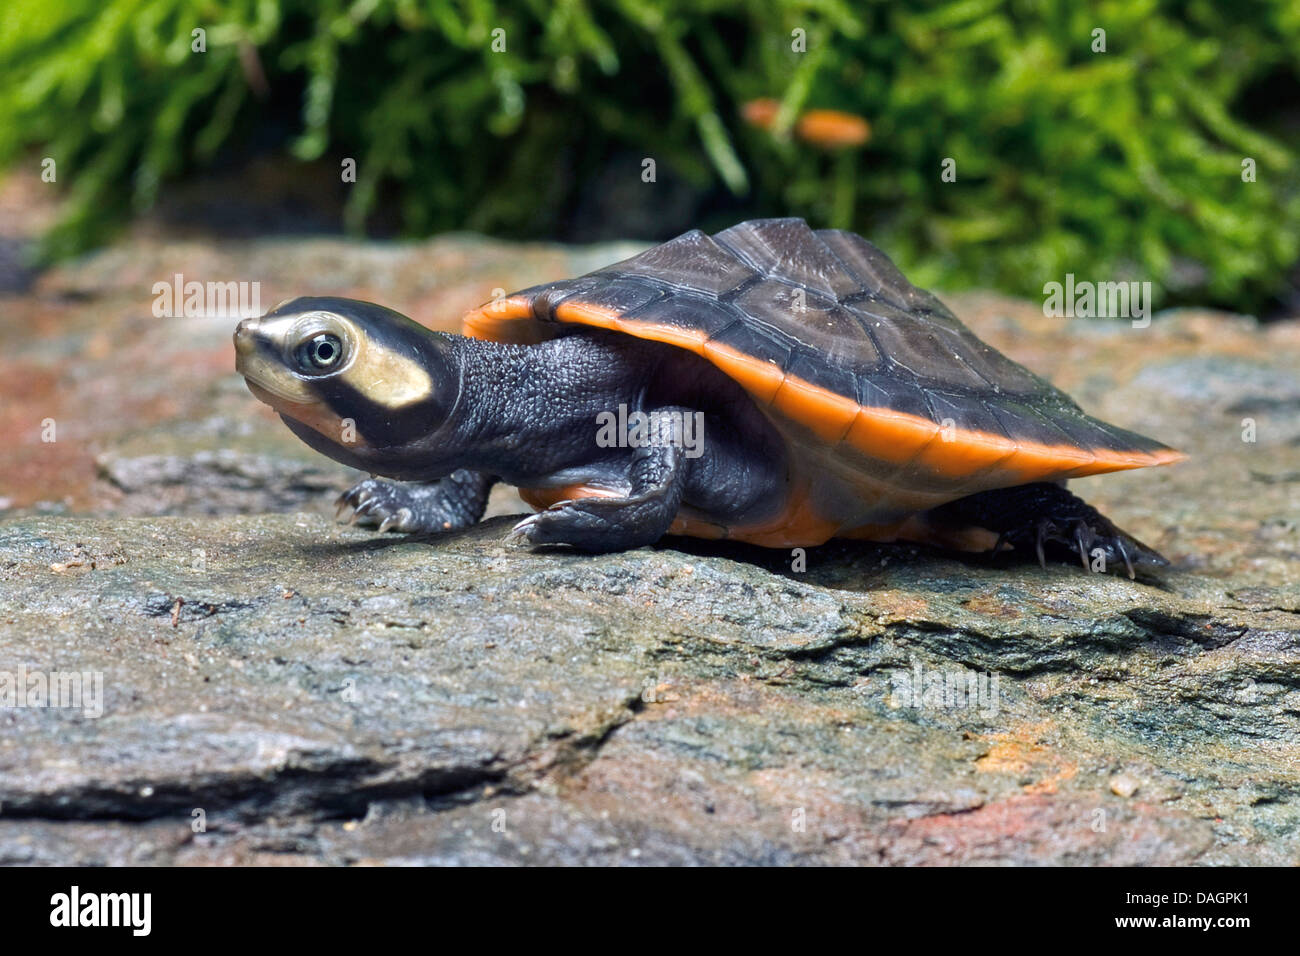 red-bellied short-necked turtle (Emydura subglobosa, Emydura albertisii), on a stone Stock Photo